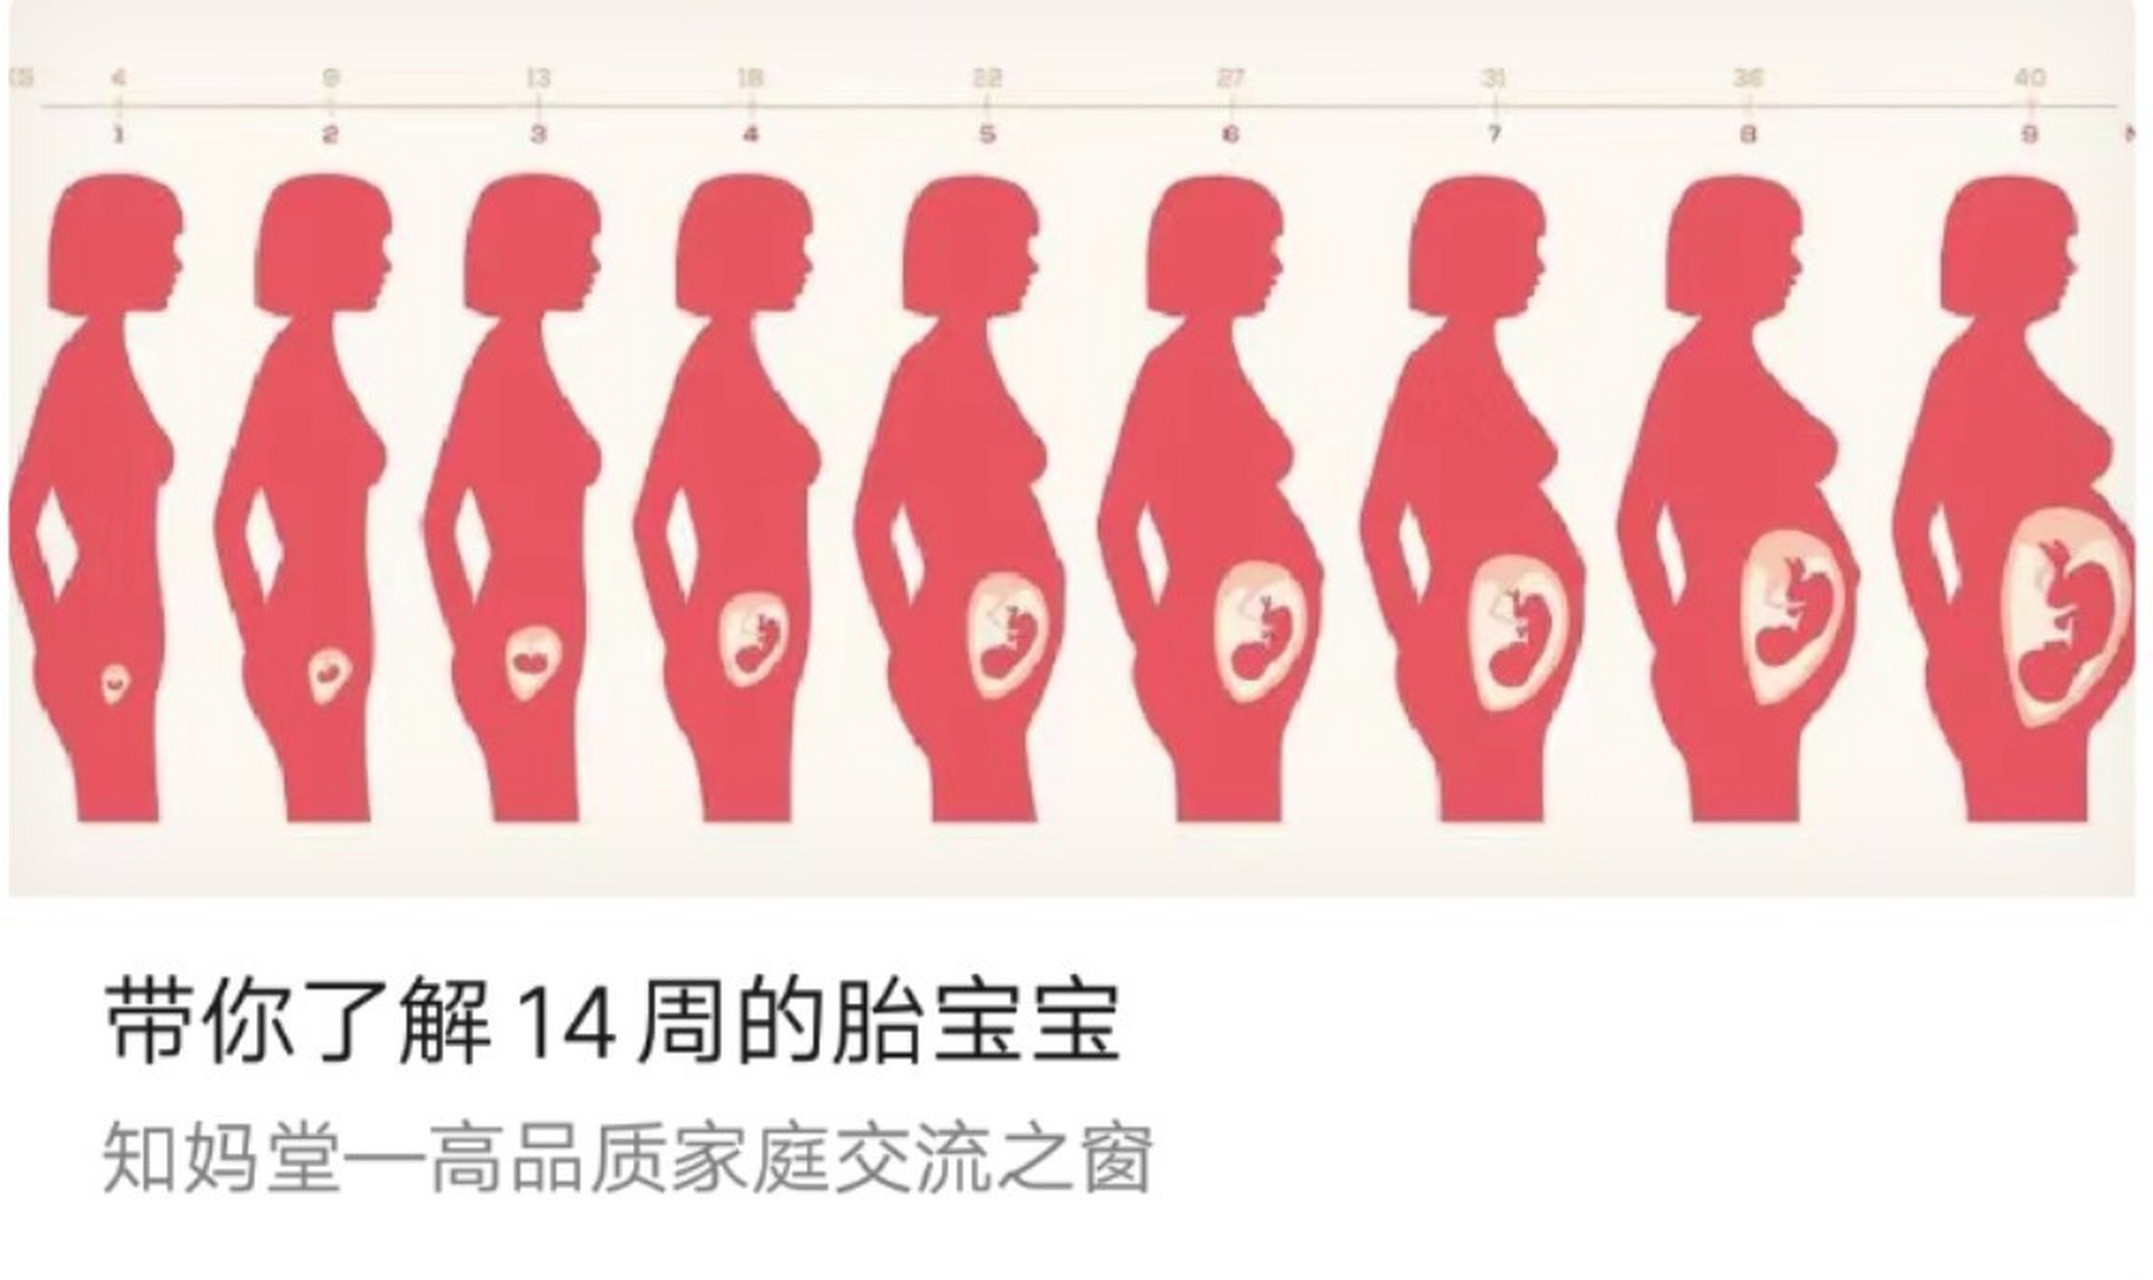 14周的胎儿有多大图片